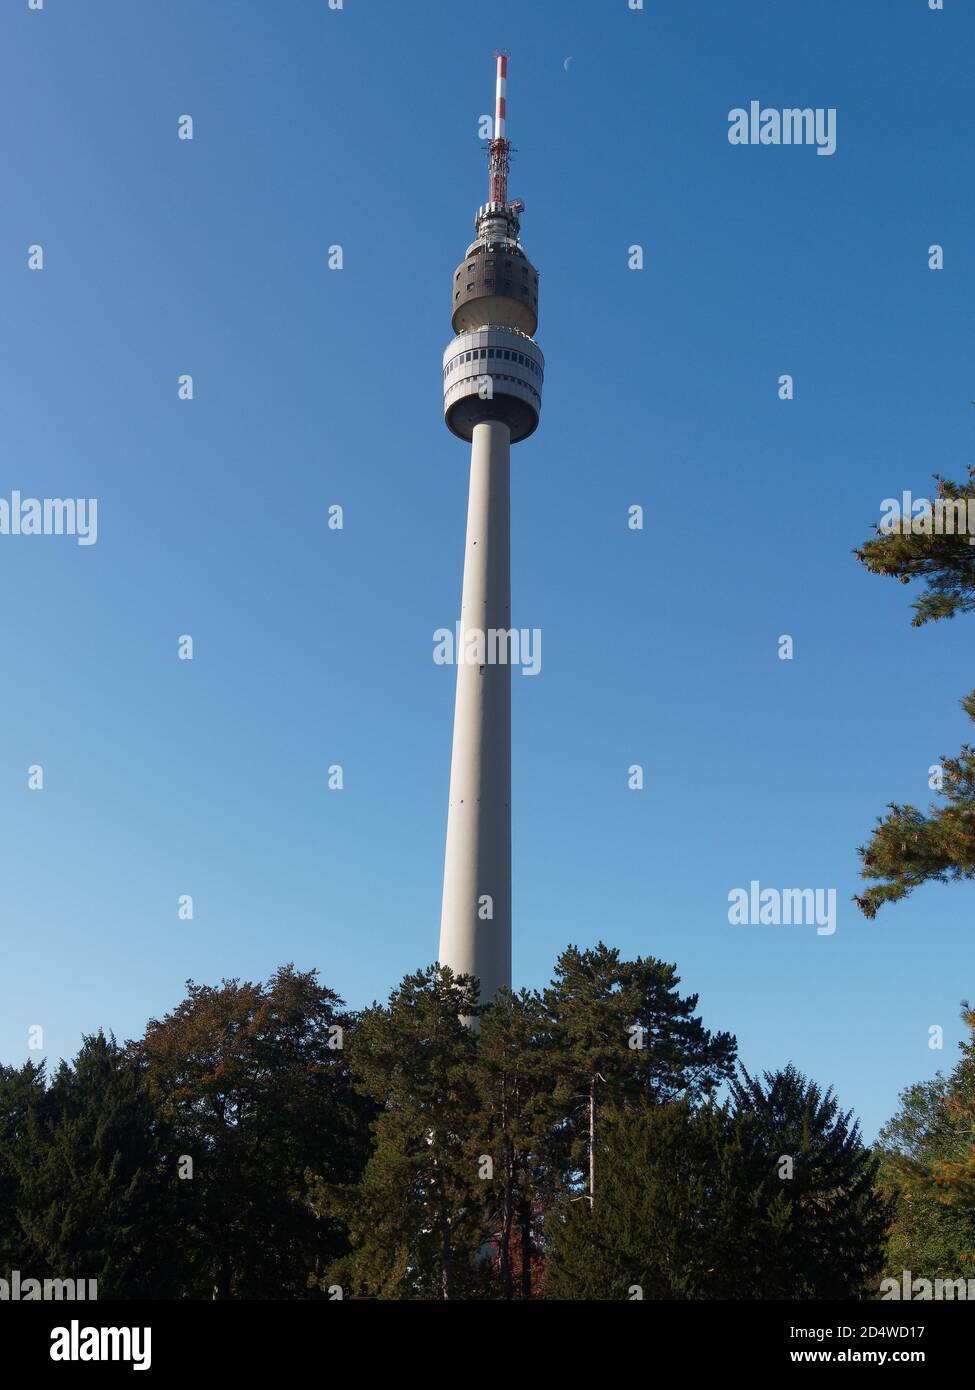 Florianturm Fernsehturm im Westfalenpark hinter Bäumen, in Dortmund, Nordrhein-Westfalen, Deutschland Westfälische Park, Landschaft, Ansicht von unten Foto Stock